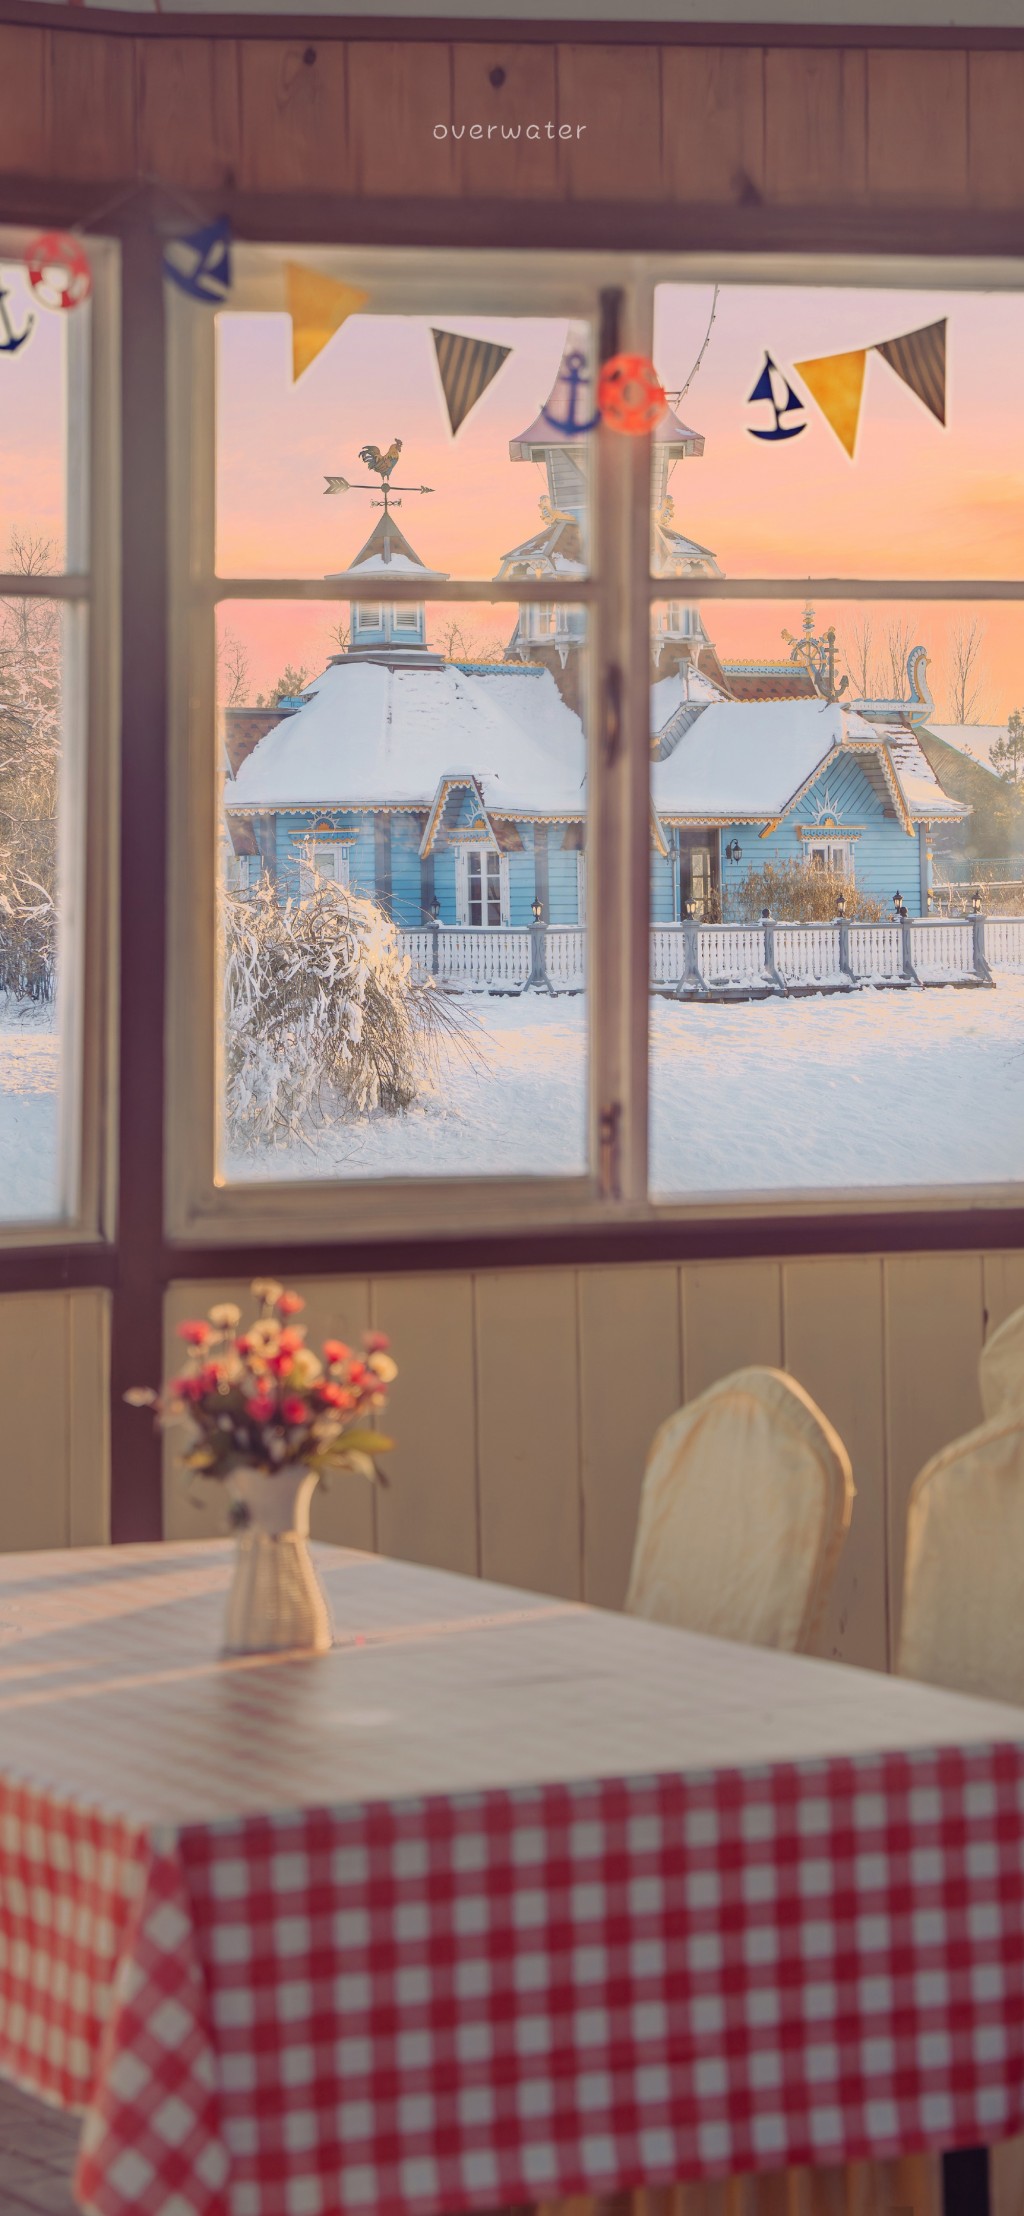 哈尔滨冰雪美景系列手机壁纸